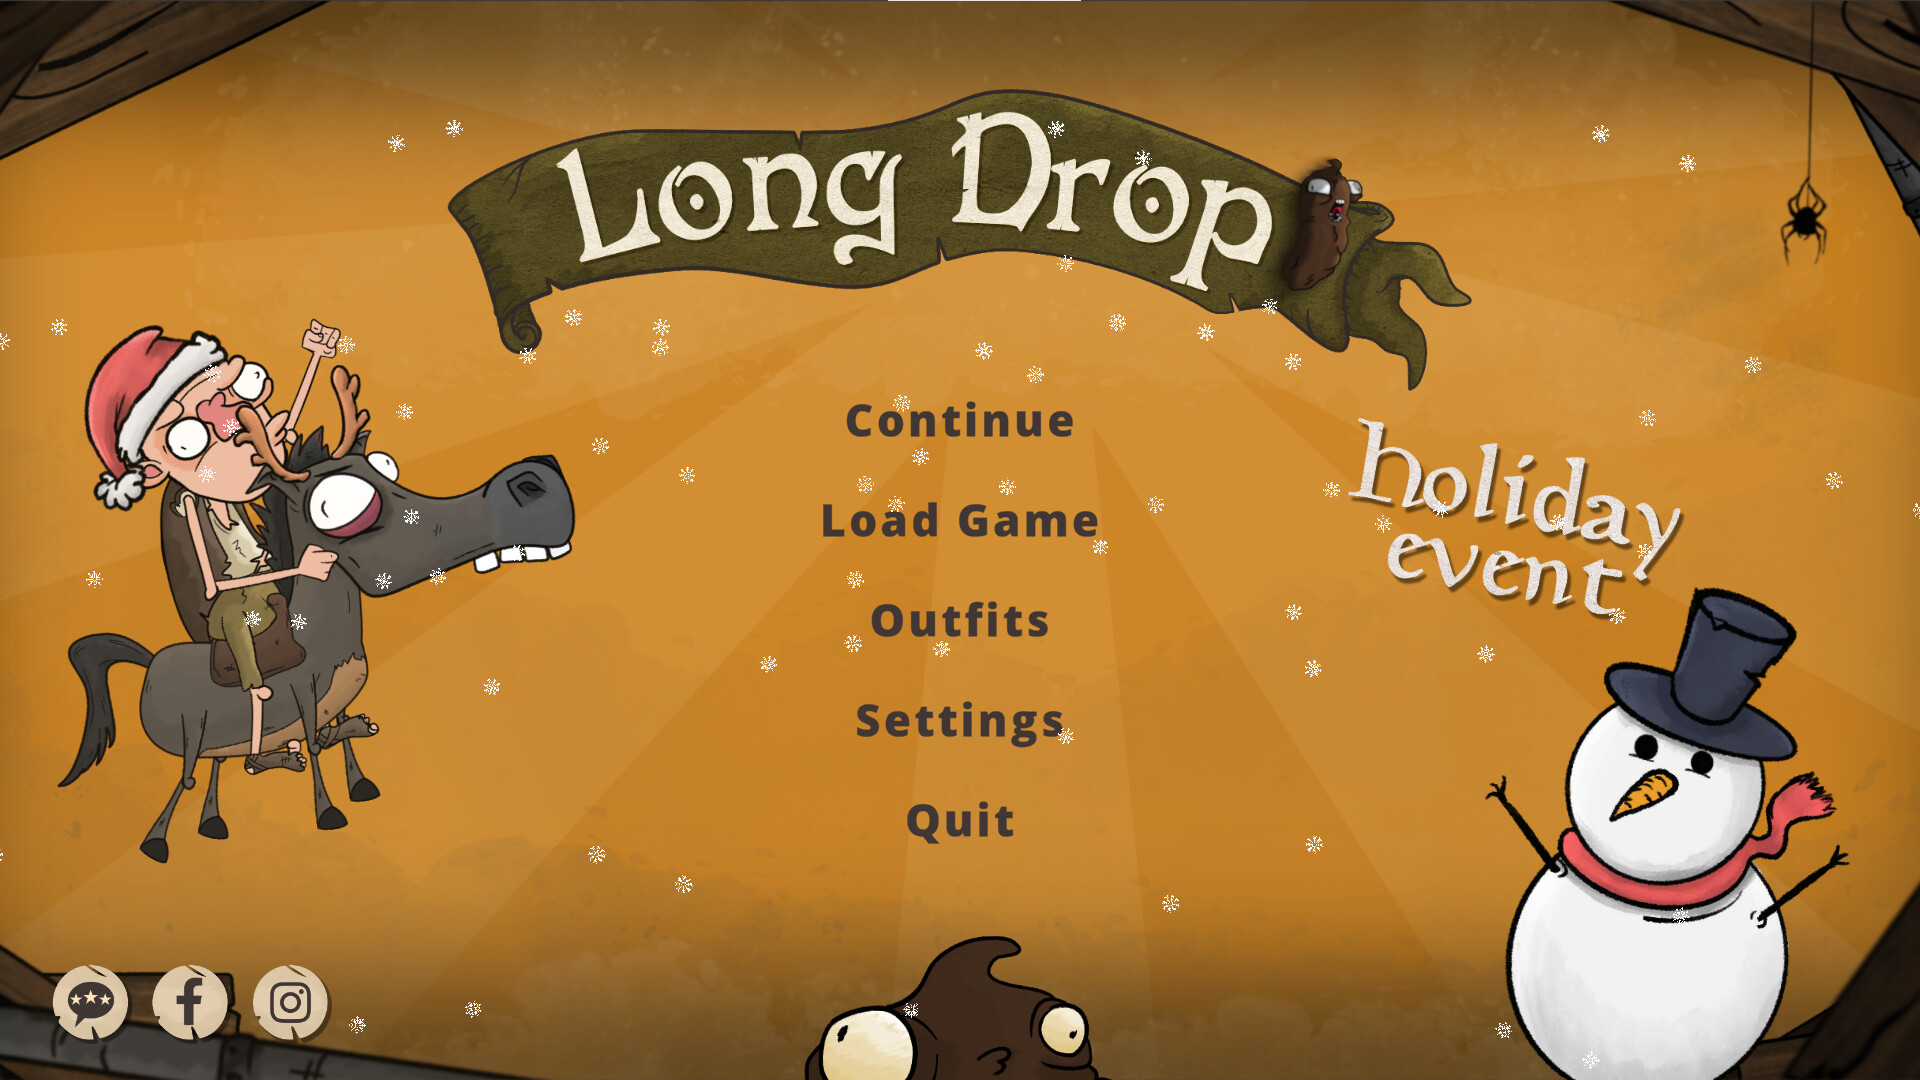 Long drop